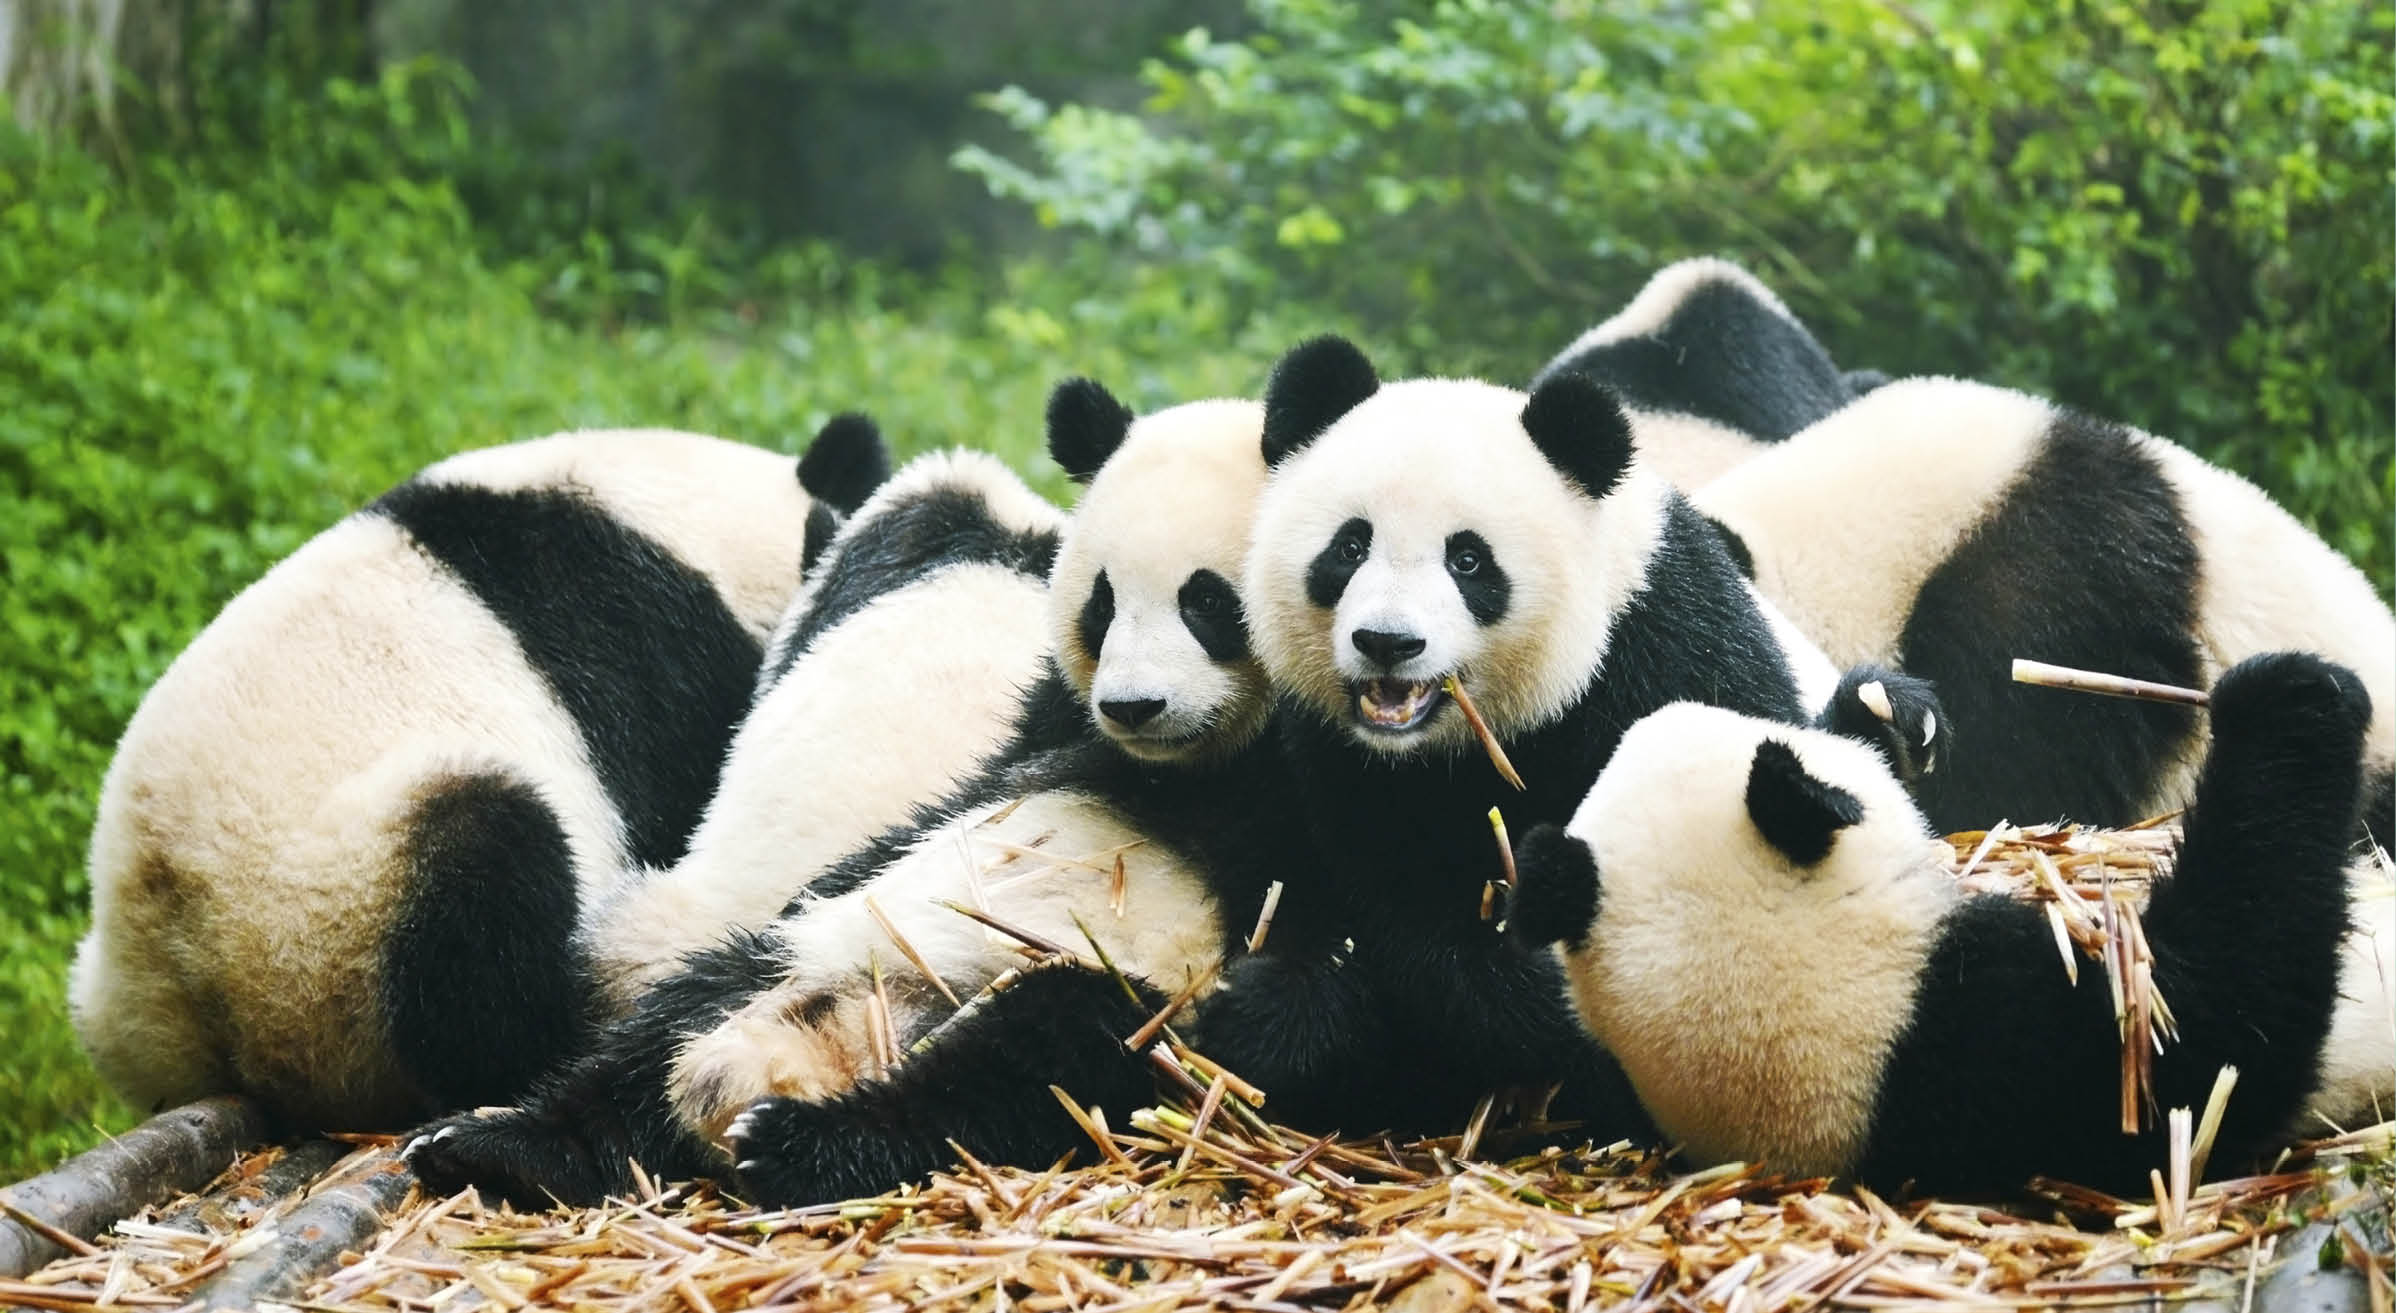 “Group of giant panda eating bamboo, ChinaMore Panda image:"